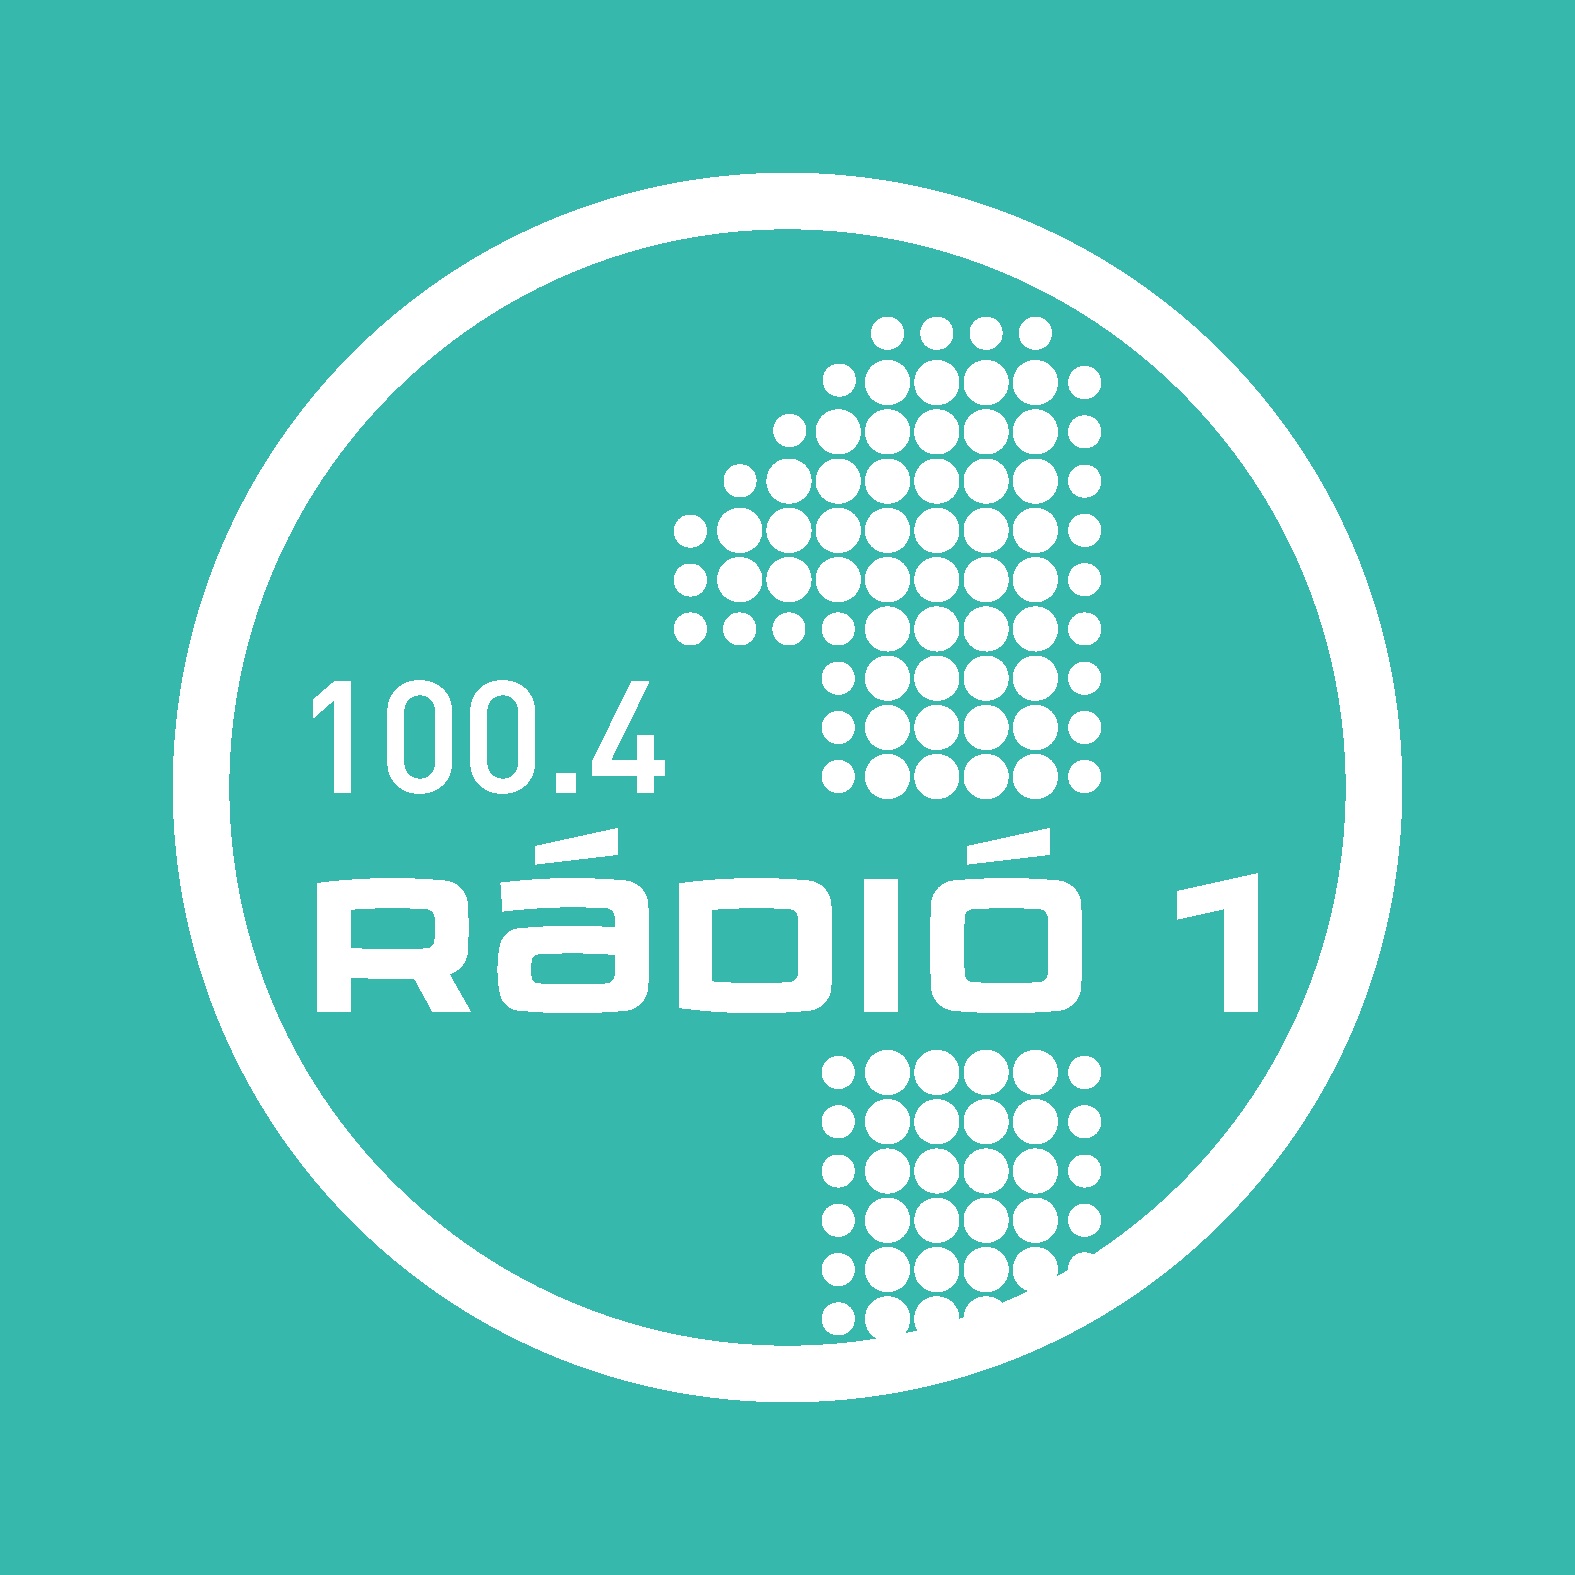 Radio 1 logo 100.4 office hoz turkiz